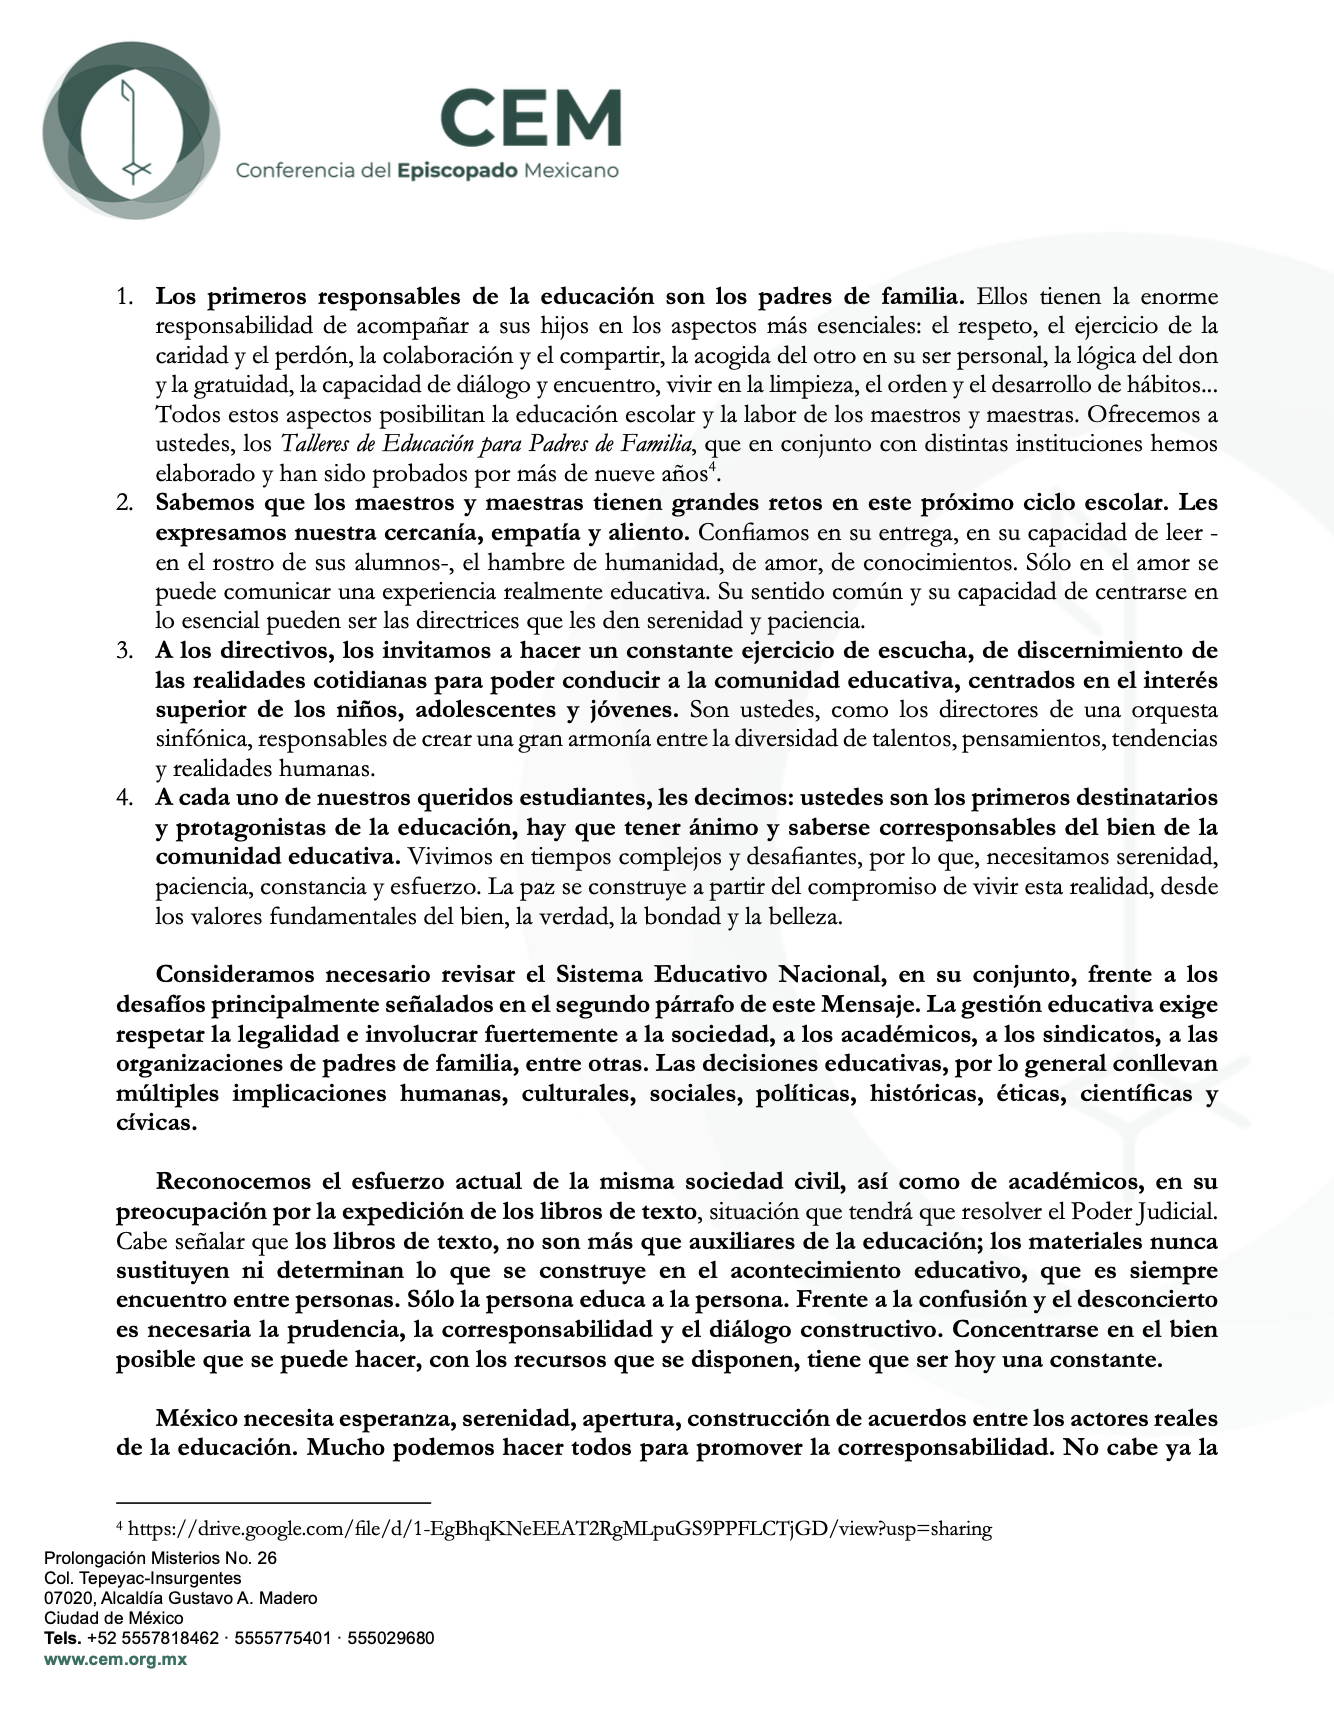 MENSAJE DE LA CONFERENCIA DEL EPISCOPADO MEXICANO FRENTE AL CICLO ESCOLAR 2023-2024. “PRIORICEMOS EL FORTALECIMIENTO DE CADA COMUNIDAD EDUCATIVA, EN BENEFICIO DE TODOS LOS NIÑOS, NIÑAS, ADOLESCENTES Y JÓVENES”-2